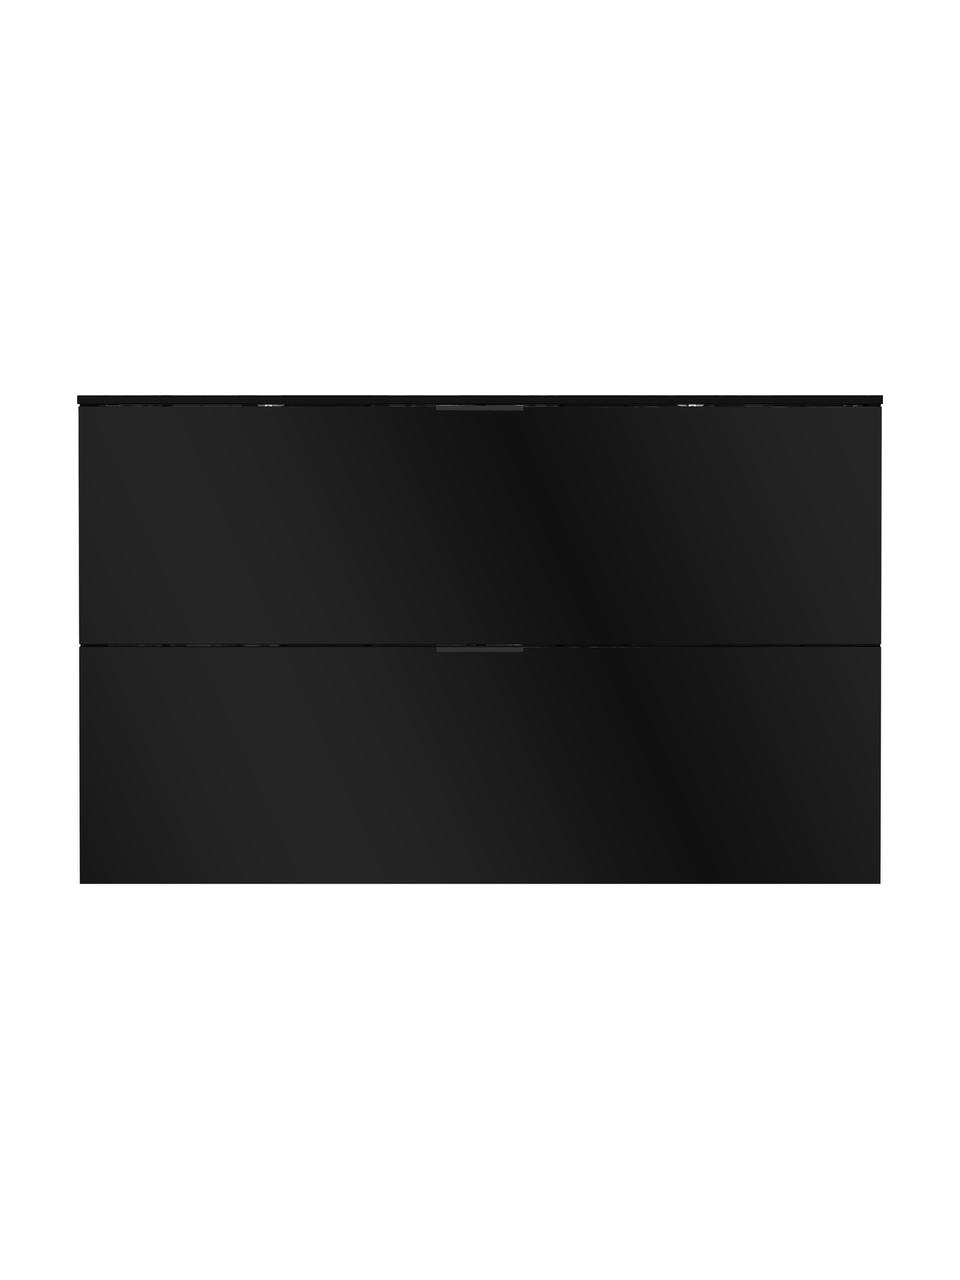 Schuhschrank Valega mit glänzender Oberfläche, Korpus: Spanplatte, Melaminharzbe, Füße: Kunststoff, Schwarz, glänzend, B 140 x H 85 cm